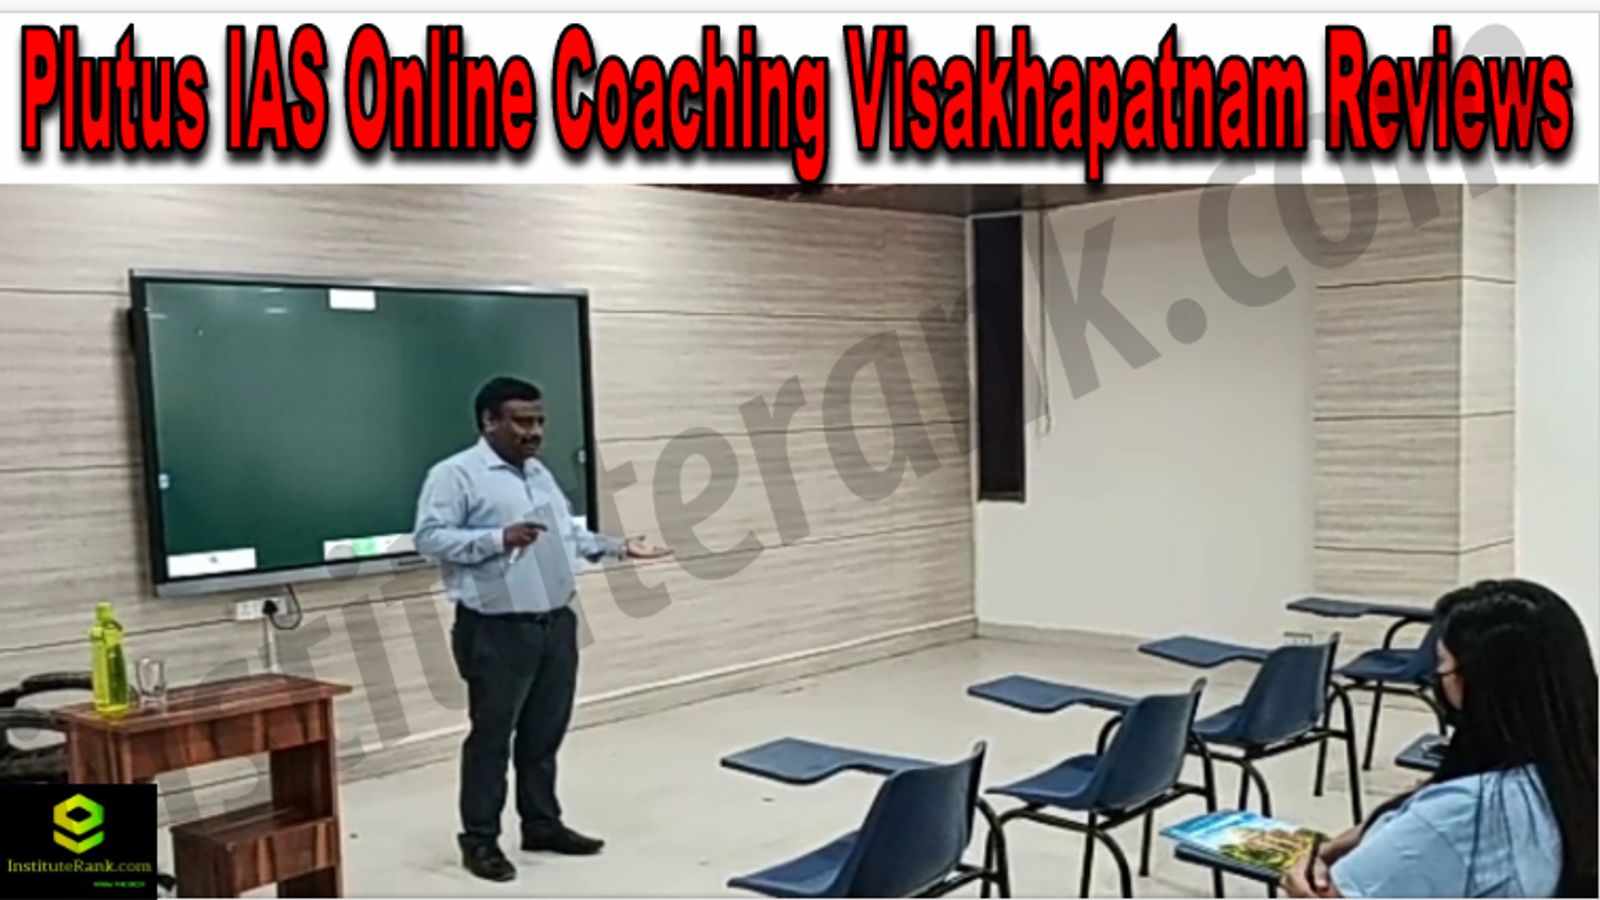 Plutus IAS Online Coaching Visakhapatnam Reviews